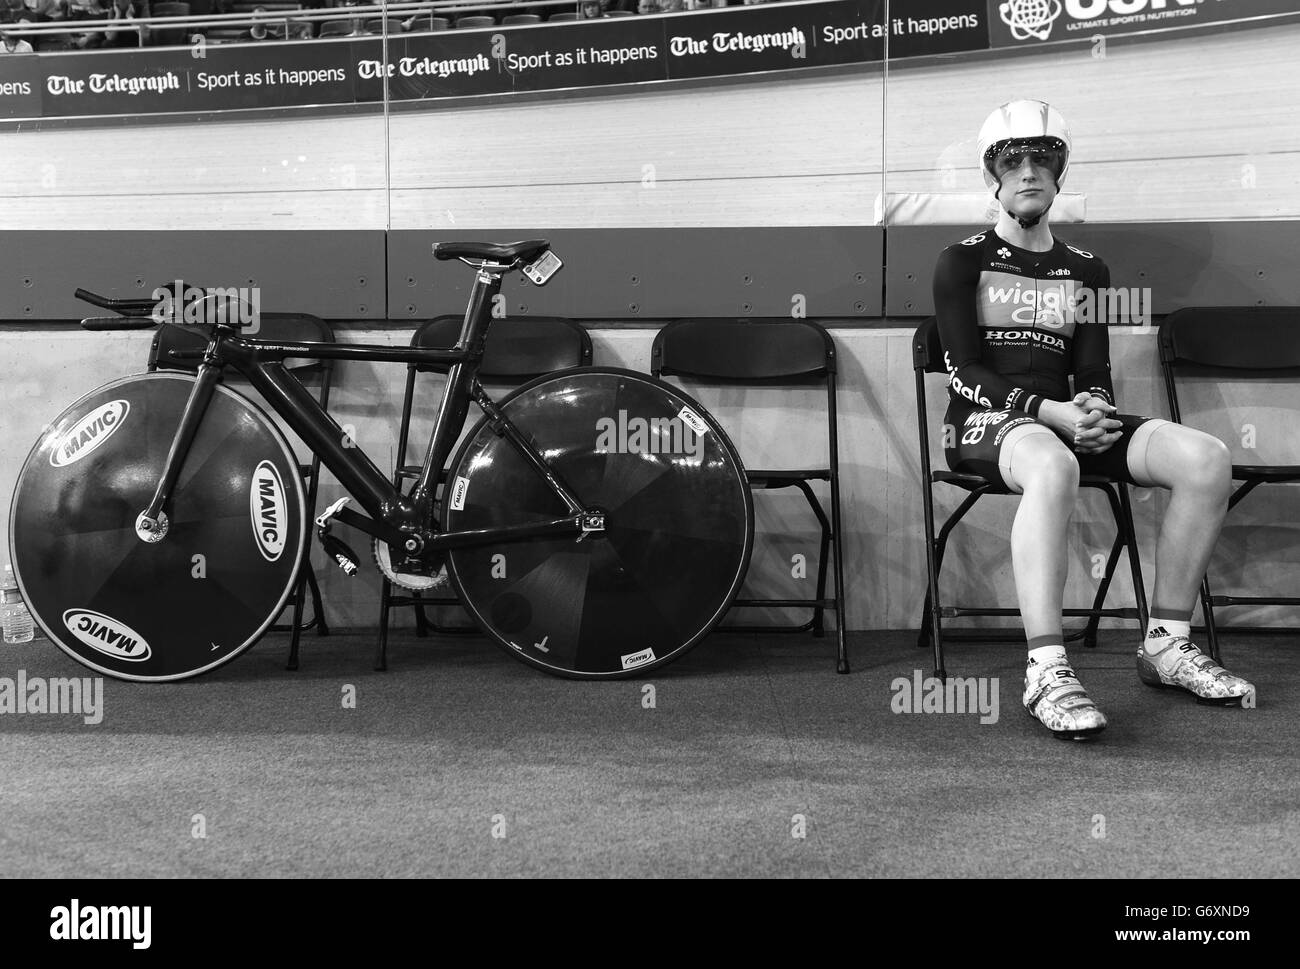 Laura Trott, de l'équipe Wiggle Honda, en Grande-Bretagne, attend sa chaleur de l'épreuve de temps UCI Omnium pendant 500 m au cours du deuxième jour de la cinquième journée de la révolution cycliste au Vélopark de Lee Valley, à Londres. Banque D'Images